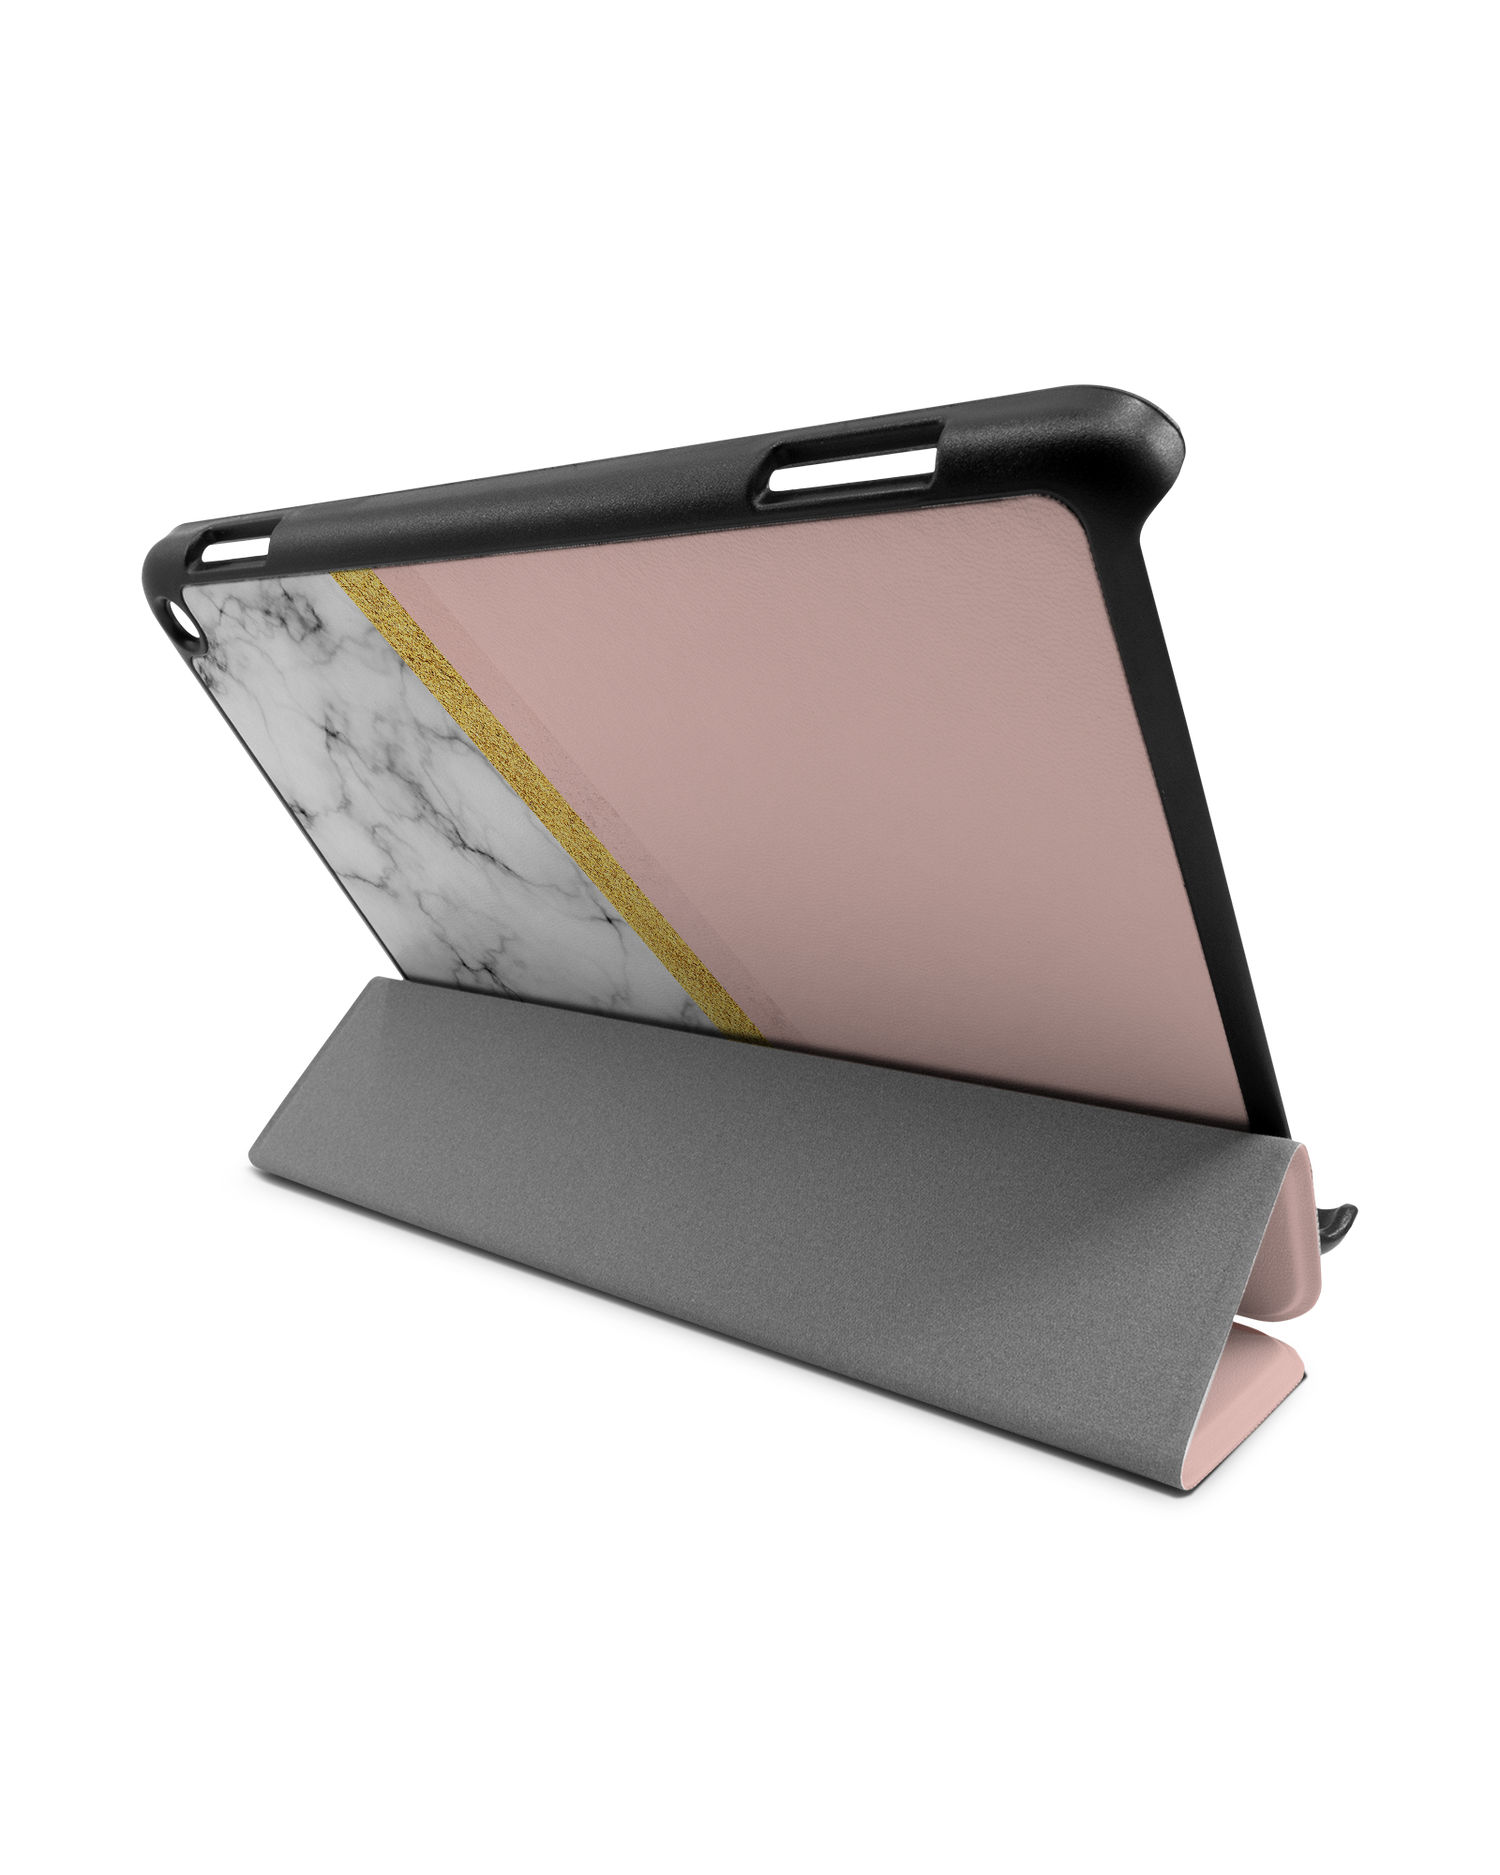 Marble Slice Tablet Smart Case für Amazon Fire HD 8 (2022), Amazon Fire HD 8 Plus (2022), Amazon Fire HD 8 (2020), Amazon Fire HD 8 Plus (2020): Aufgestellt im Querformat